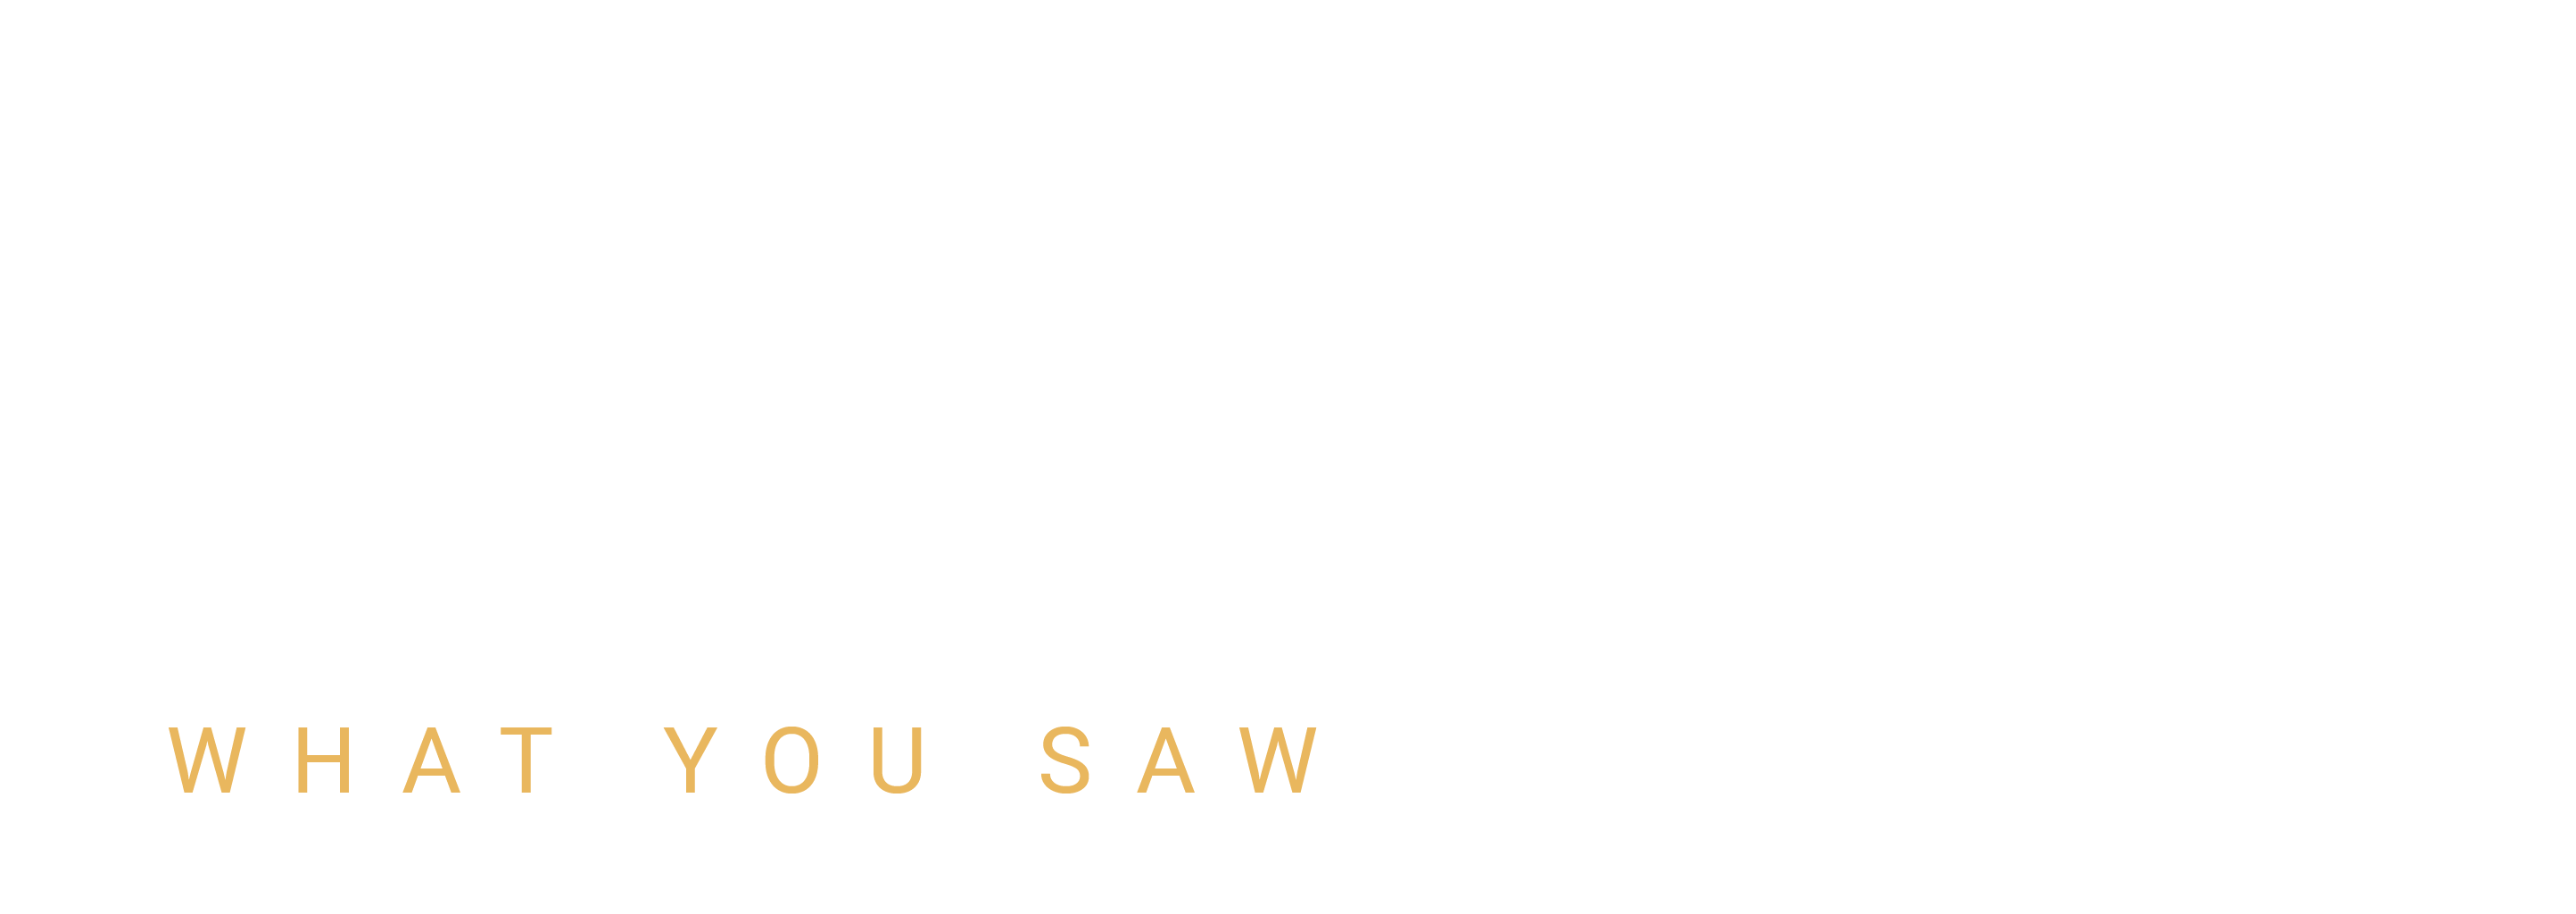 Dead End Line